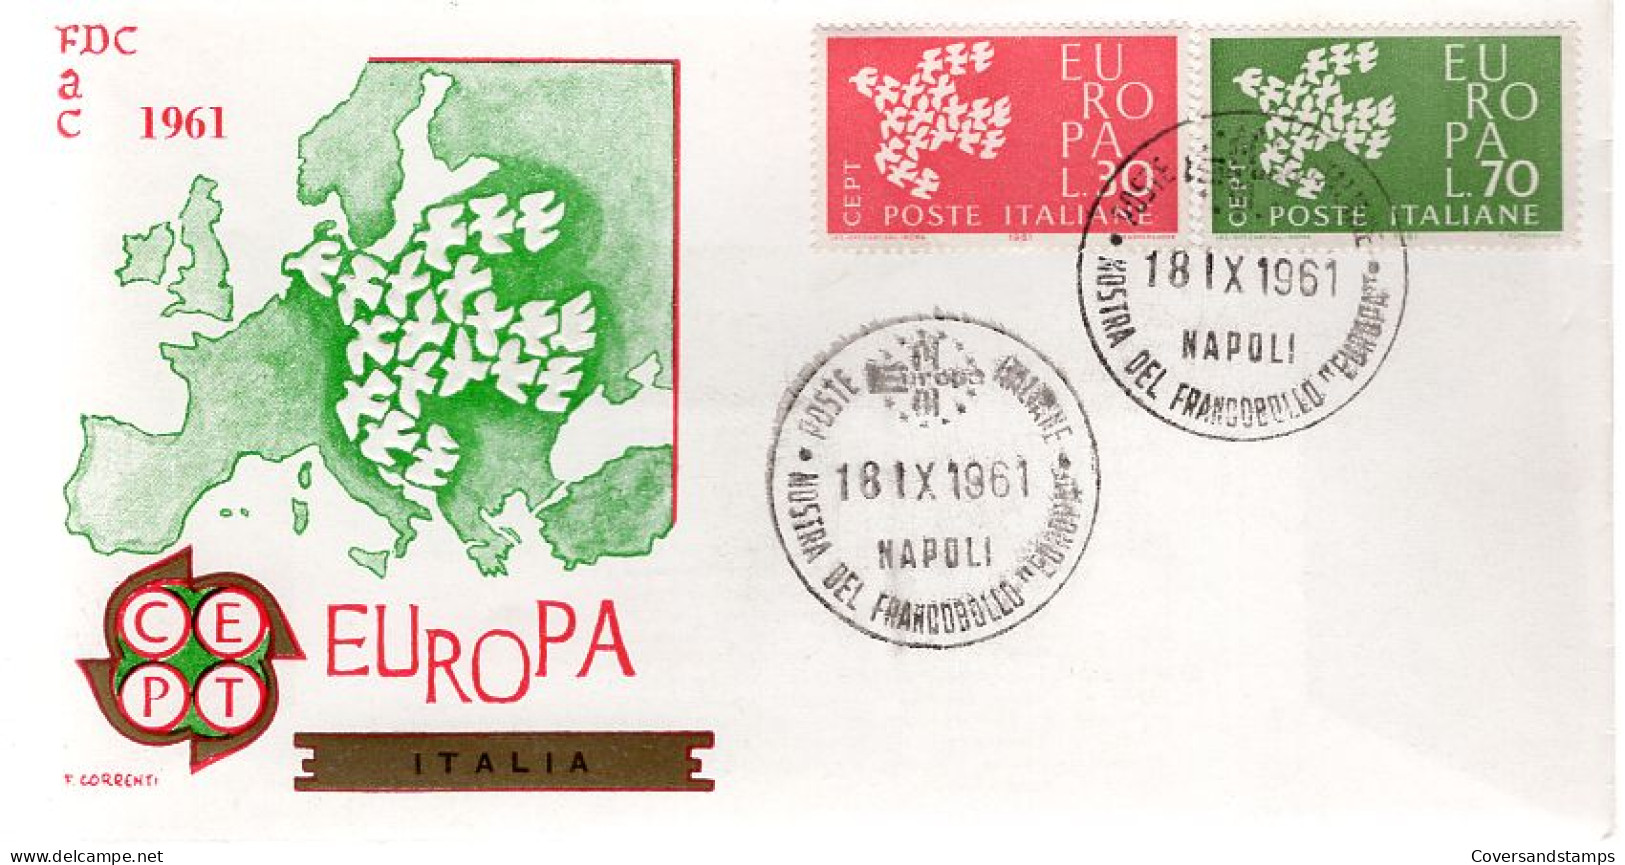  Italië - FDC - Europa CEPT 1961 - 1961